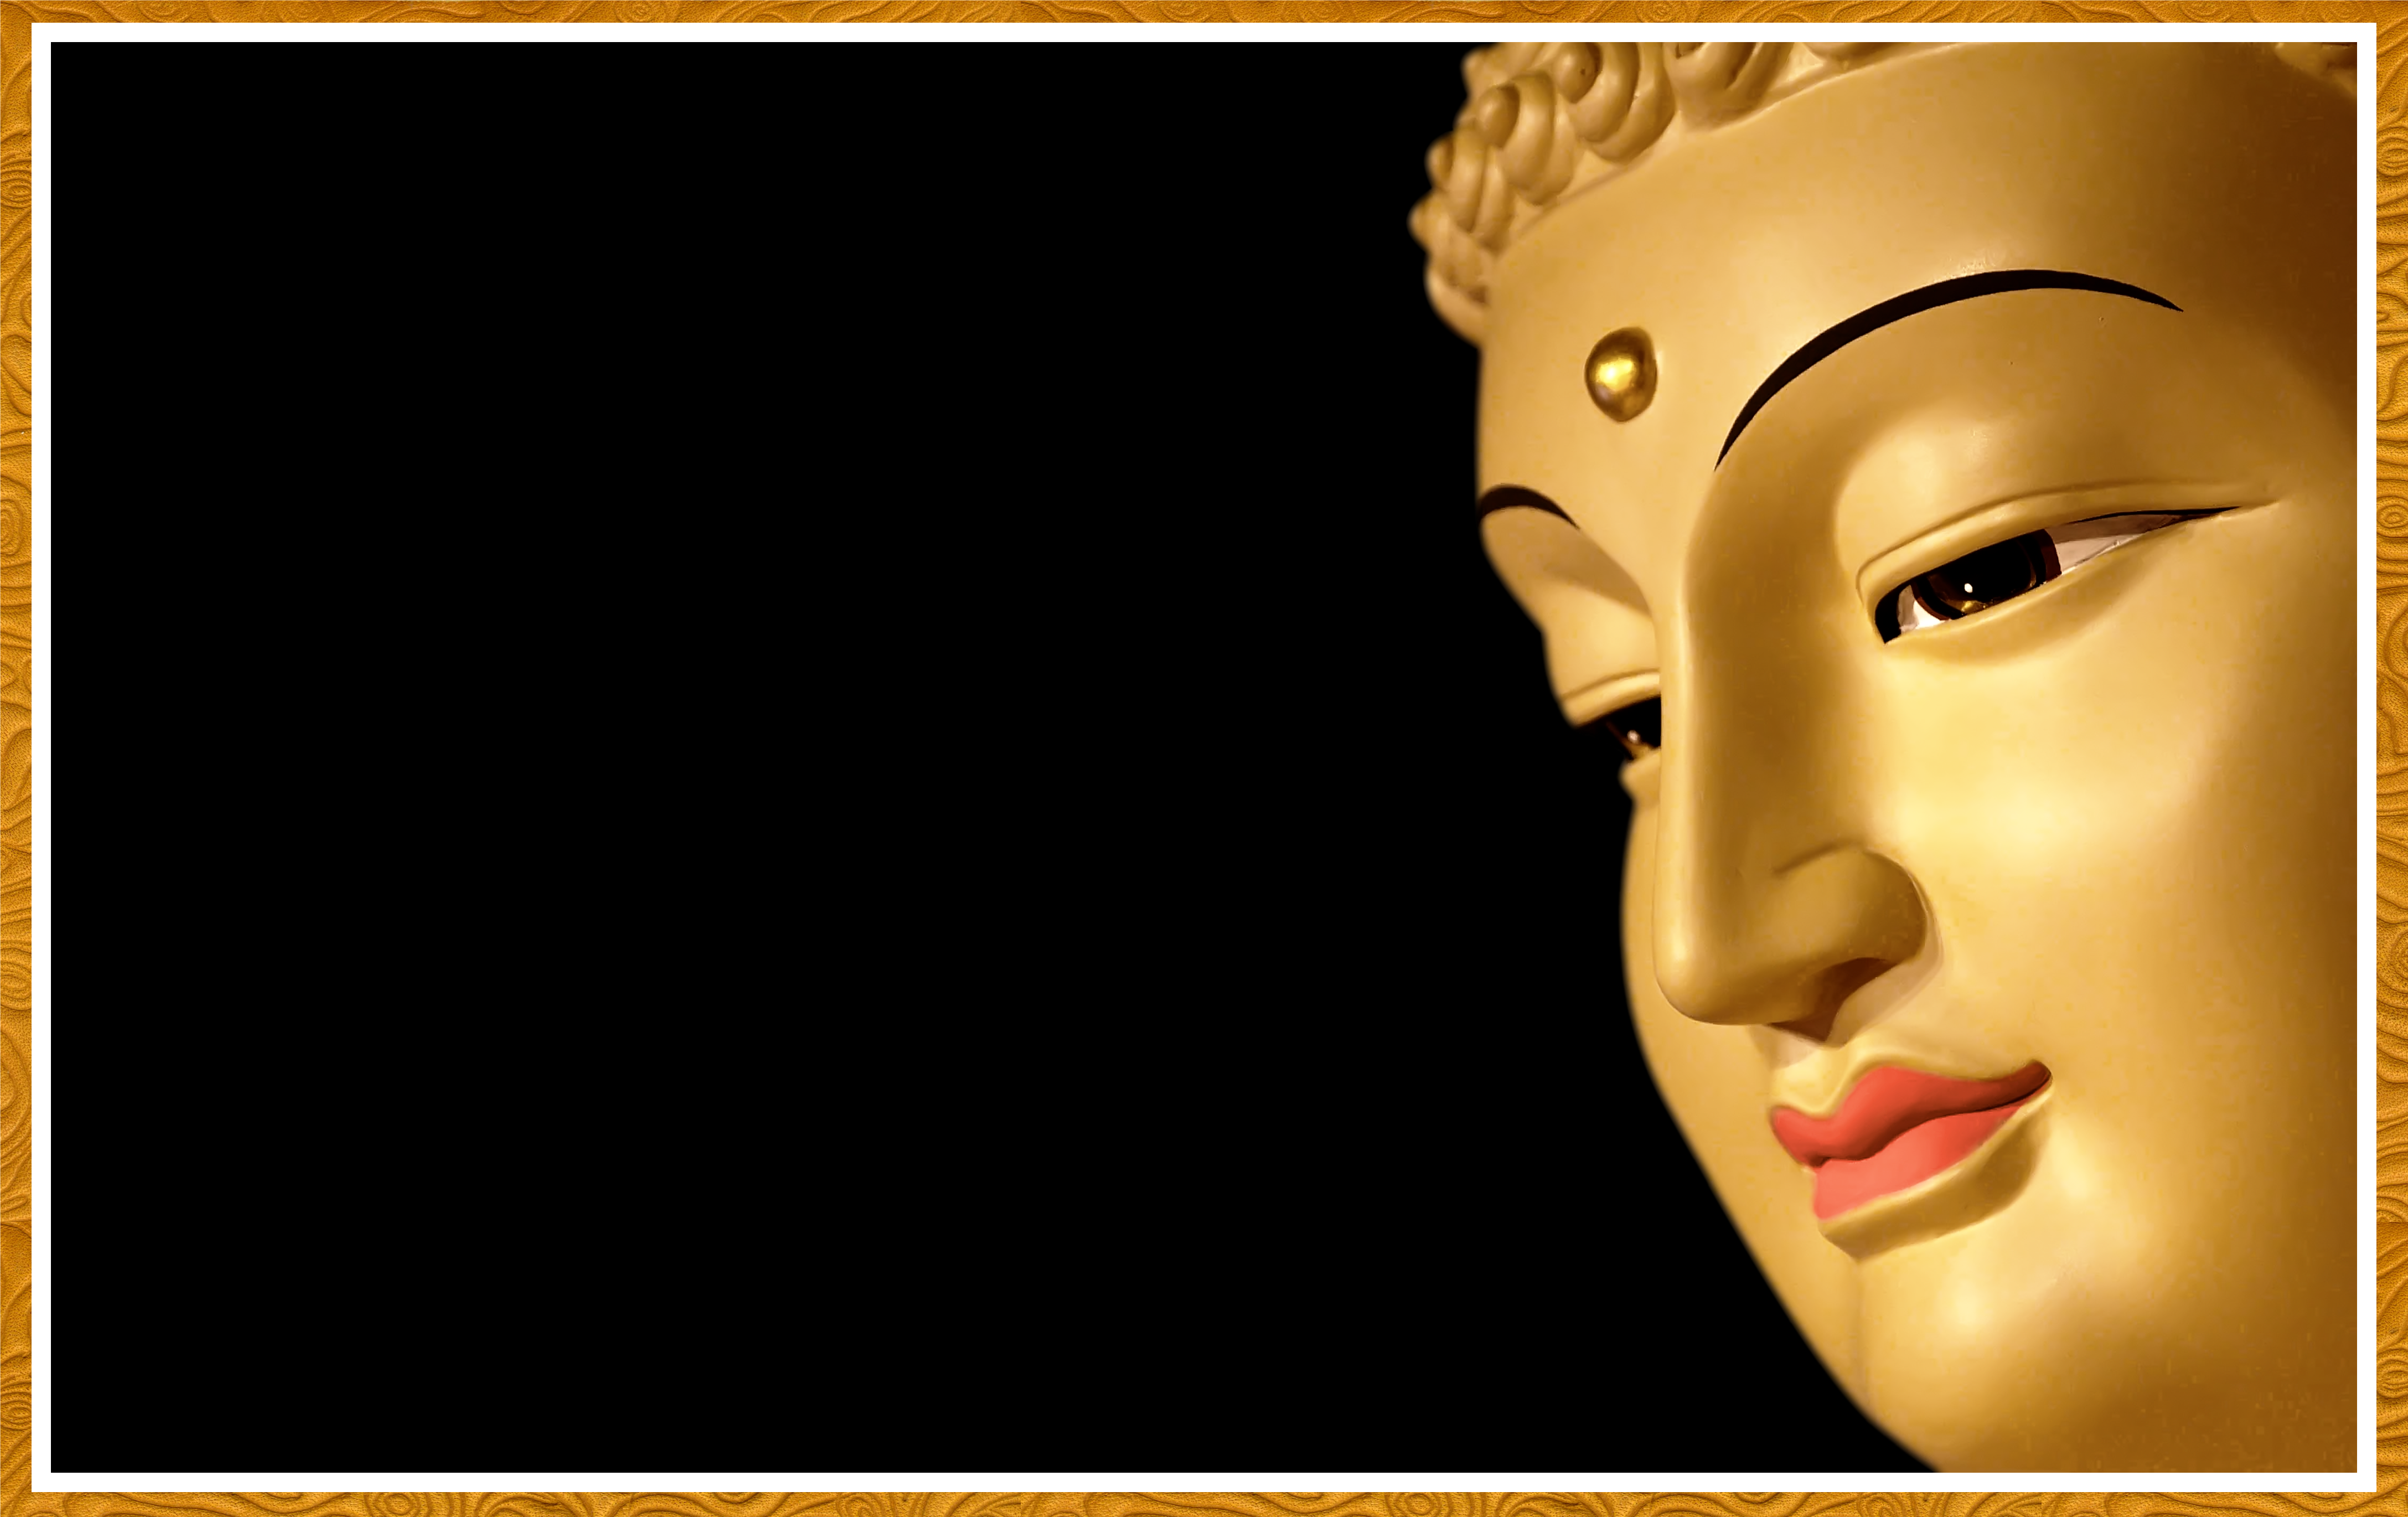 Half Face Buddha 02 by kwanyinbuddha on DeviantArt